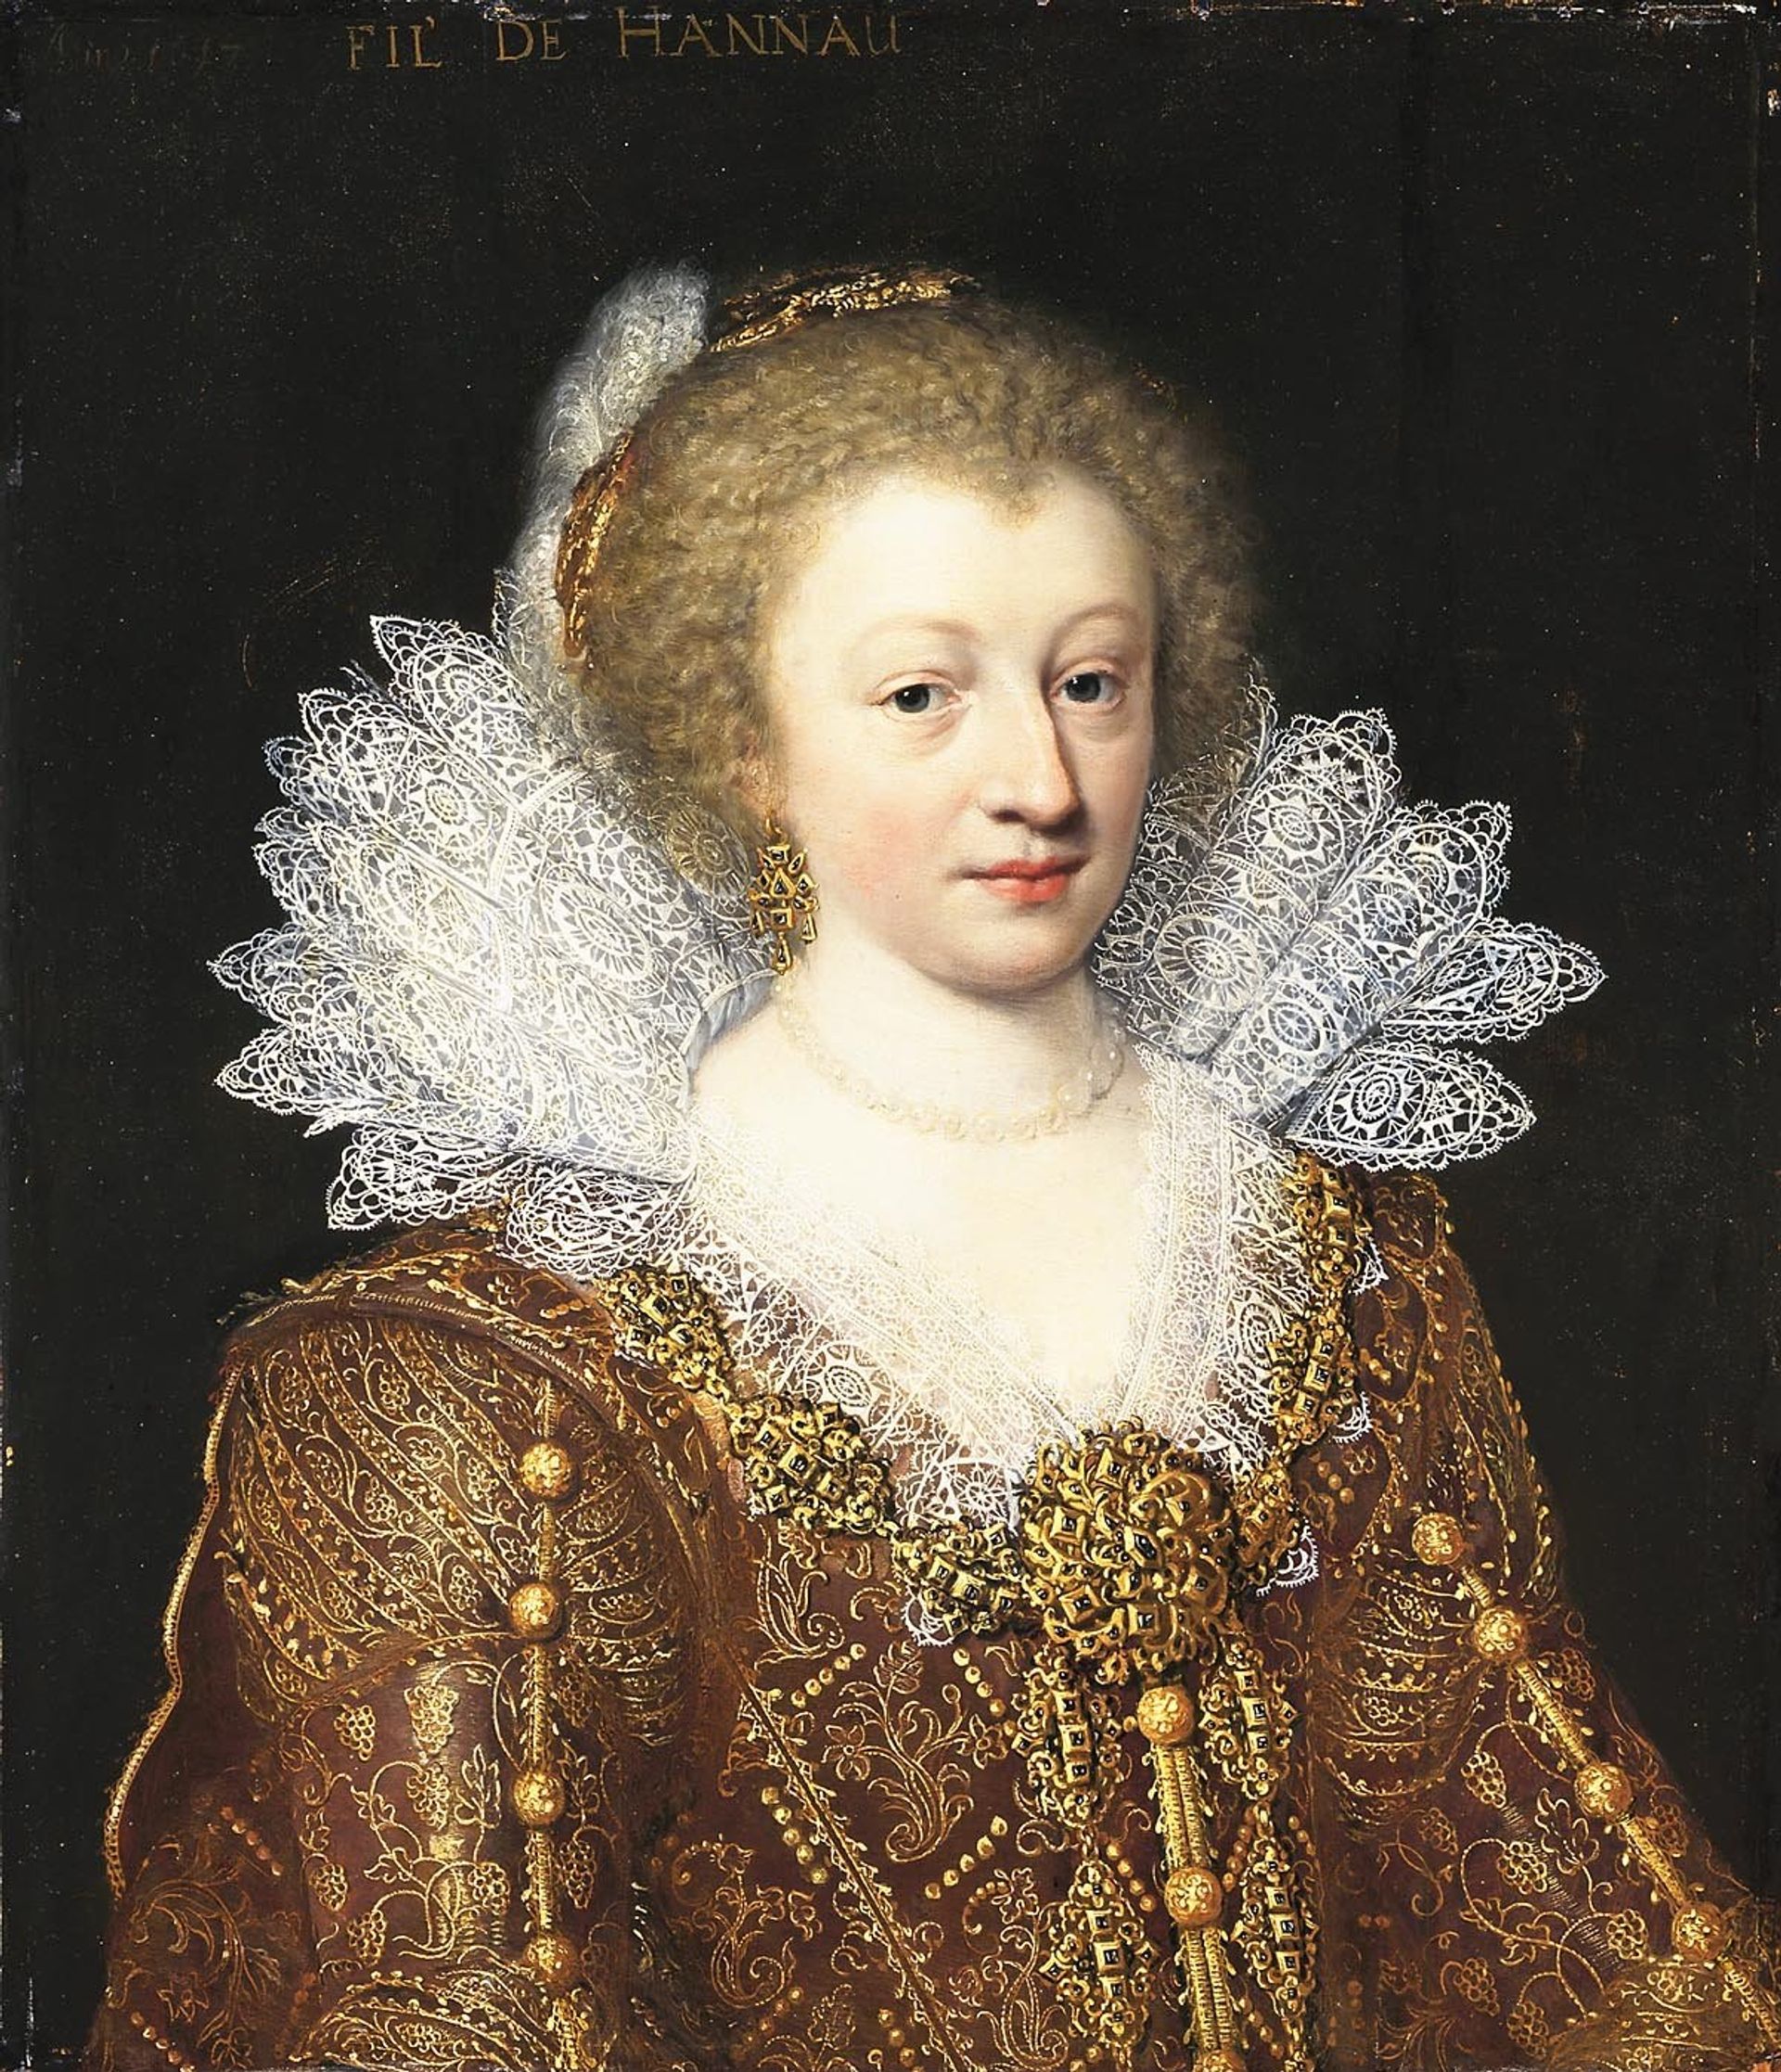 Catharina Belgica van Nassau